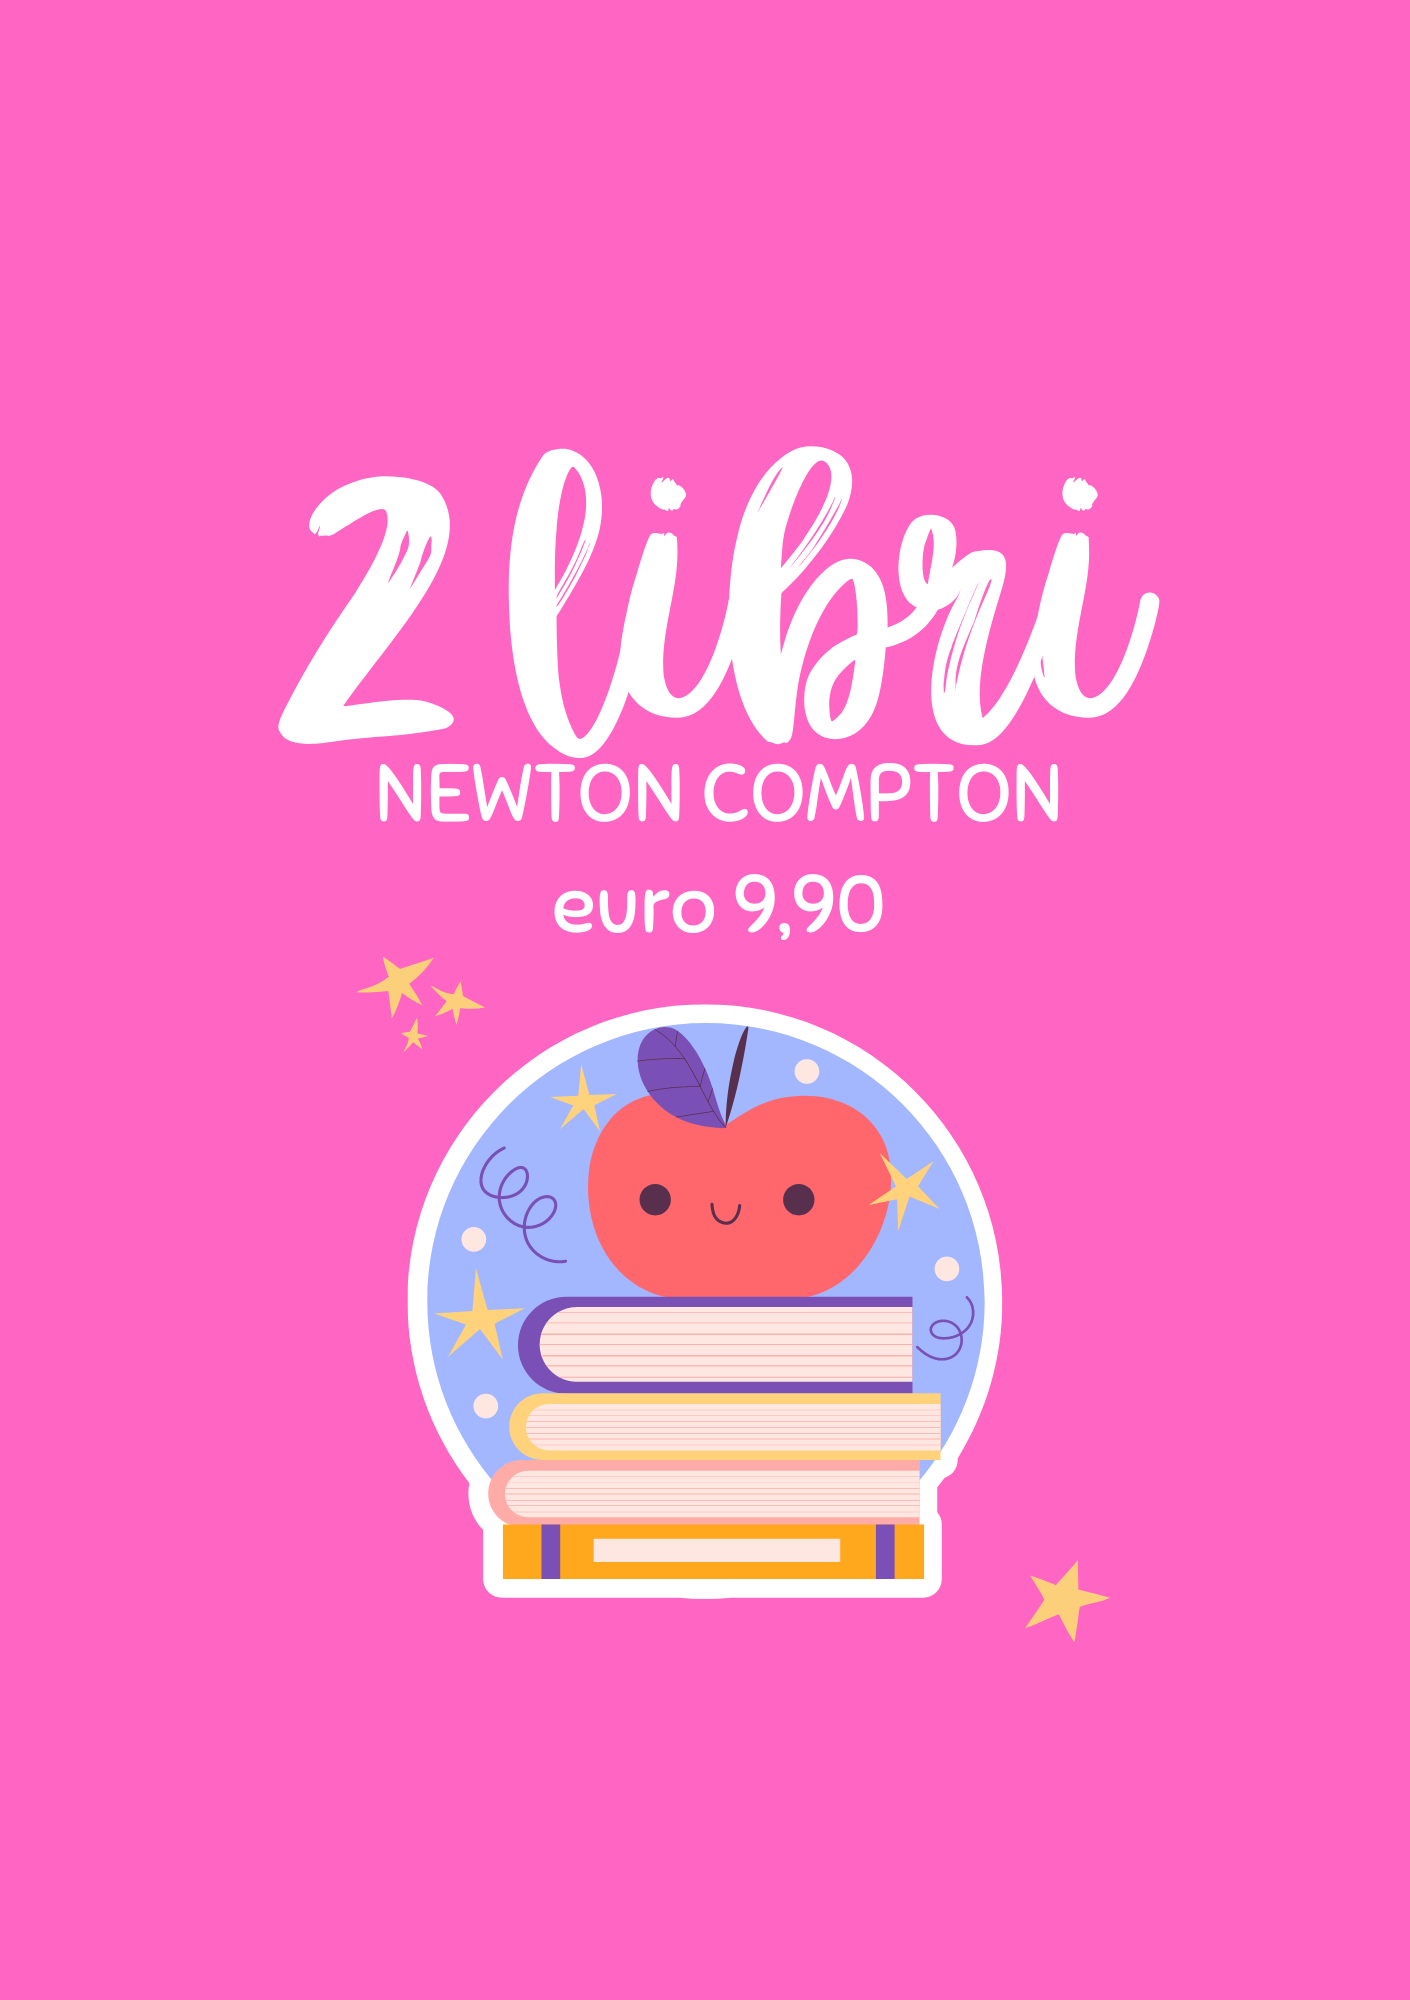 Libri Newton Compton -20%